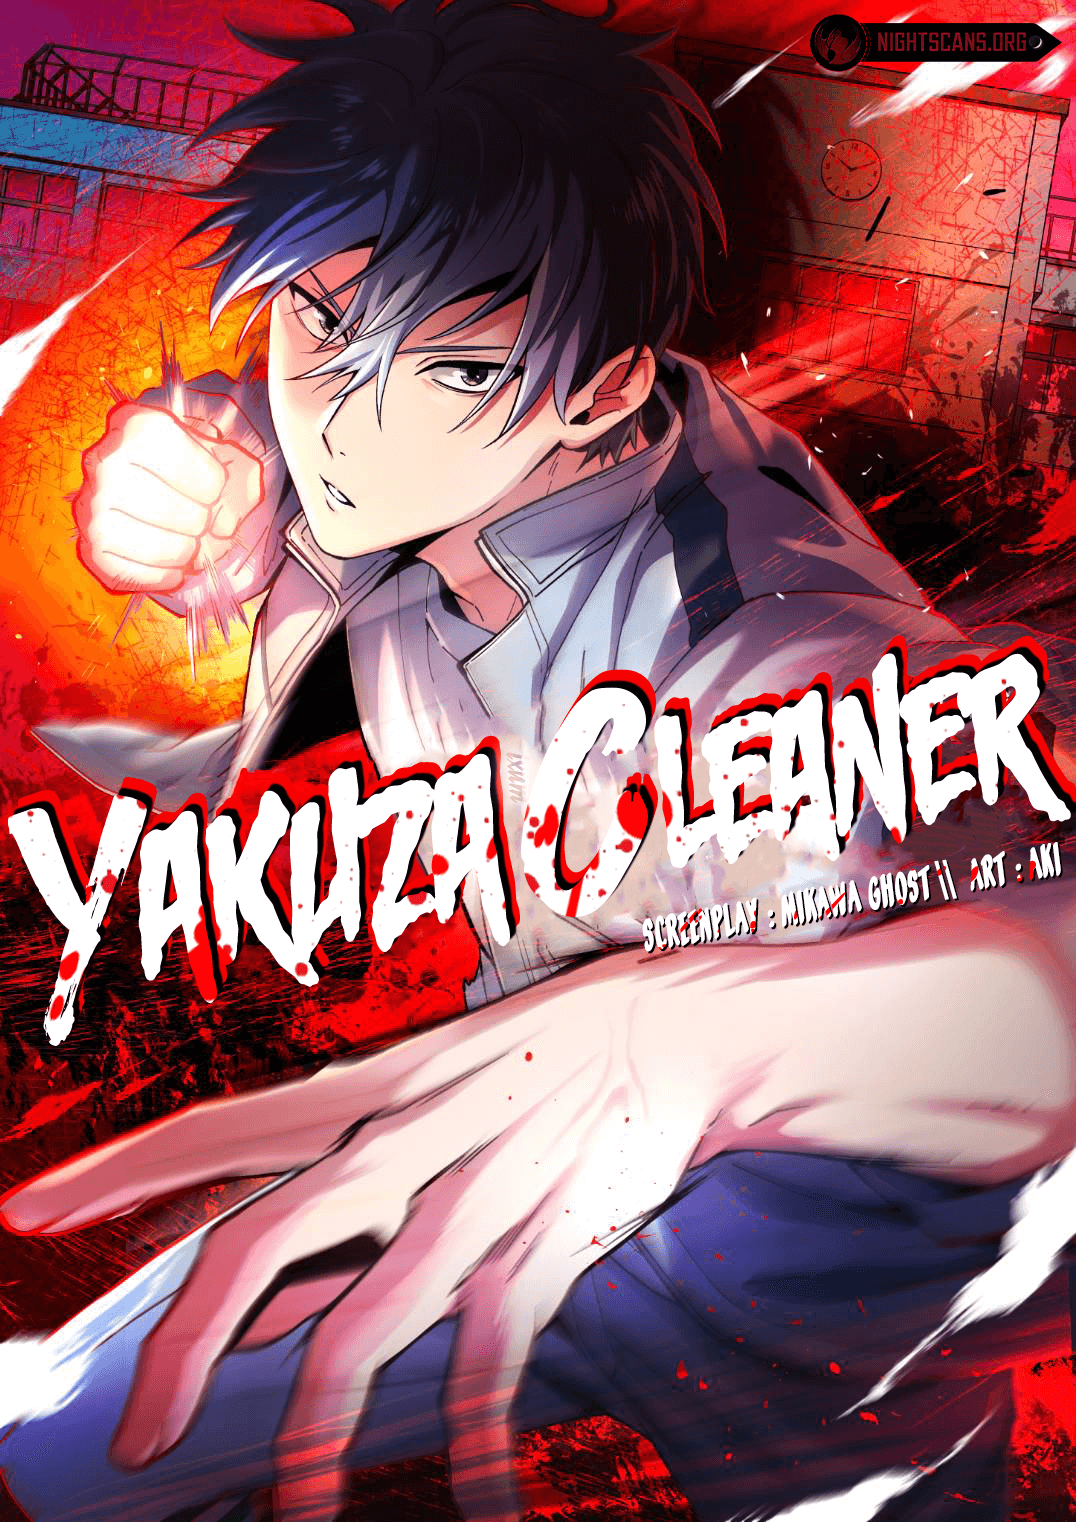 Yakuza Cleaner Chapter 75